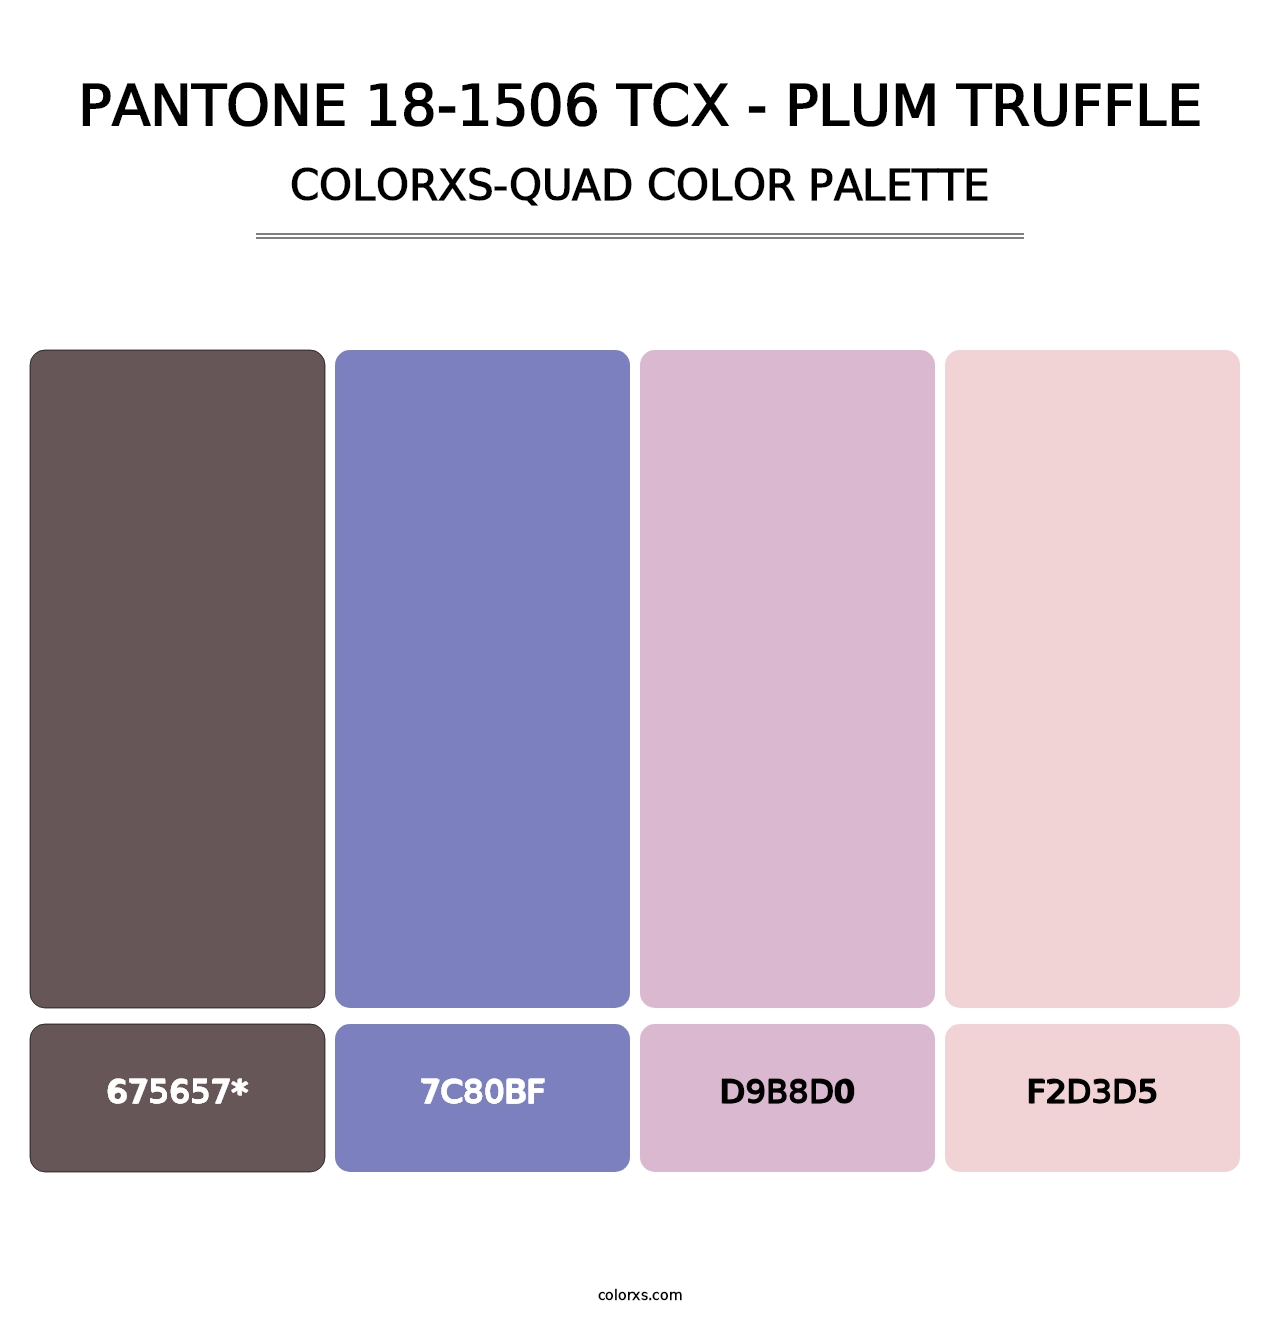 PANTONE 18-1506 TCX - Plum Truffle - Colorxs Quad Palette